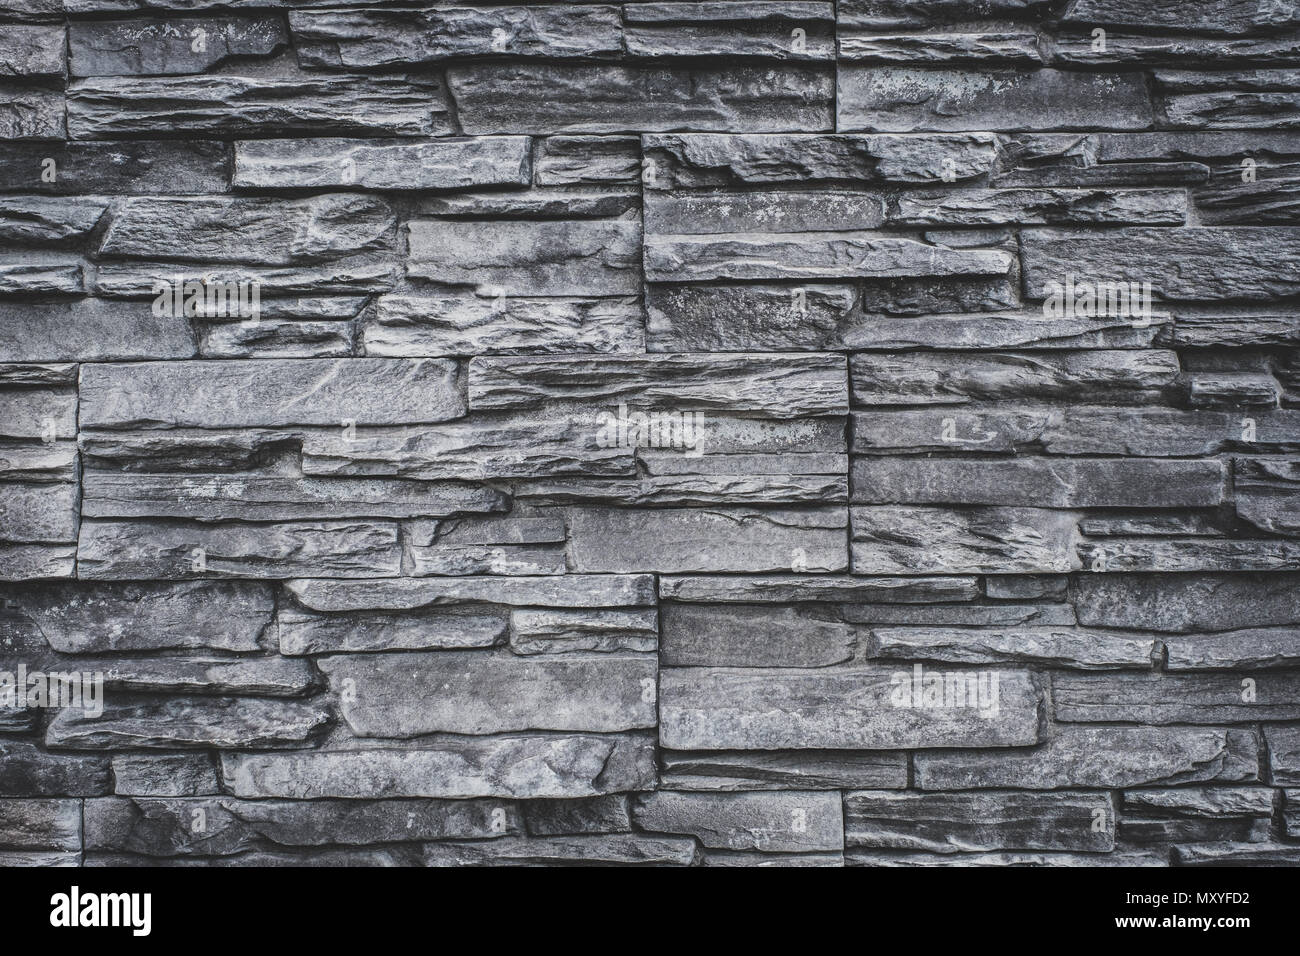 Mur en pierres naturelles - pierre de granit gris fond texture - sol carrelé de dalles en pierre naturelle pour intérieur Banque D'Images